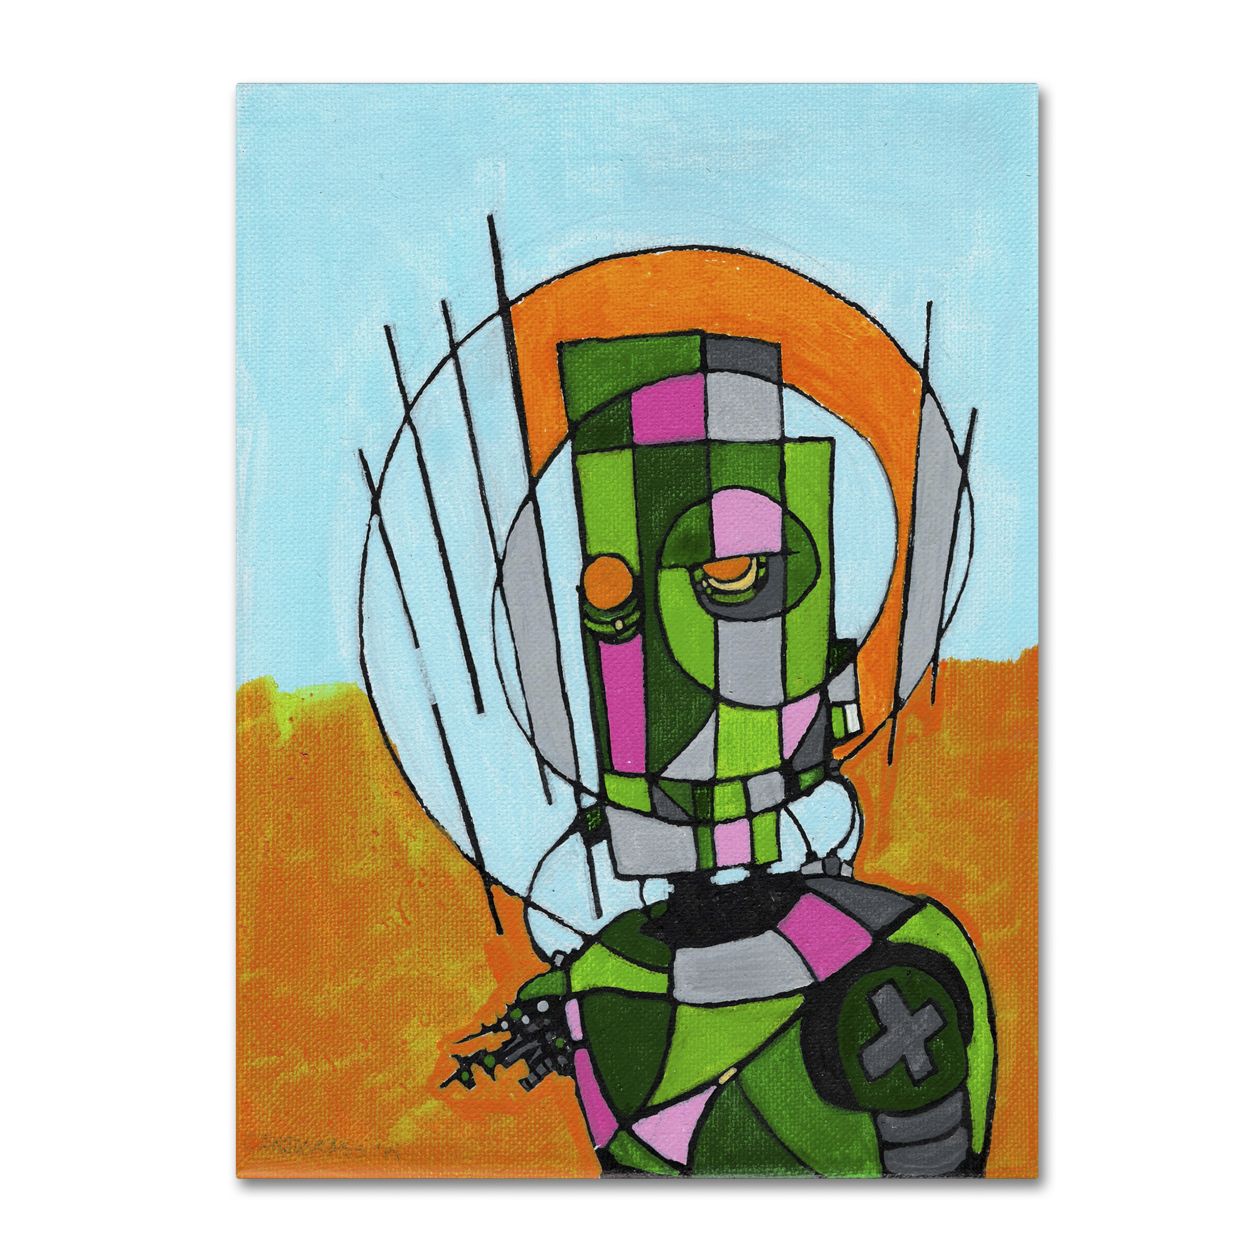 Craig Snodgrass 'Segmented Man II' Canvas Wall Art 35 X 47 Inches